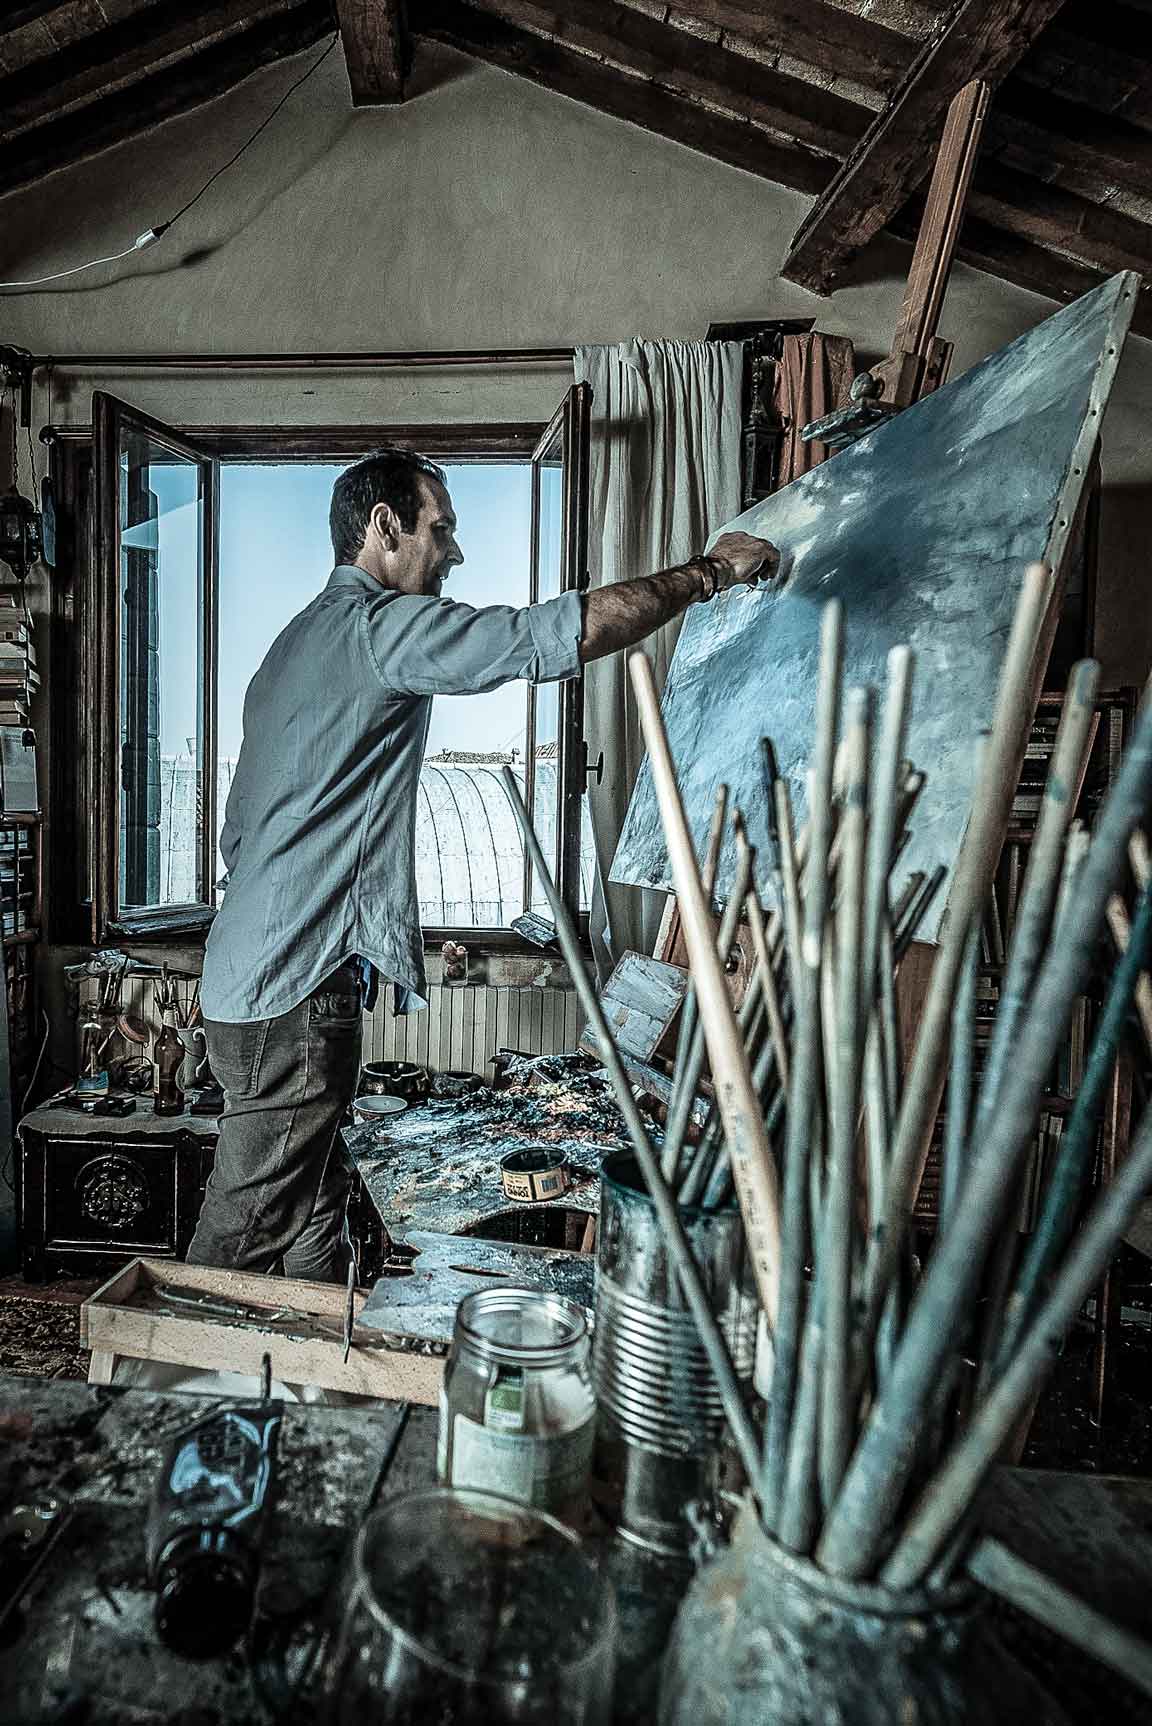 The painter Davide Battistin in his studio